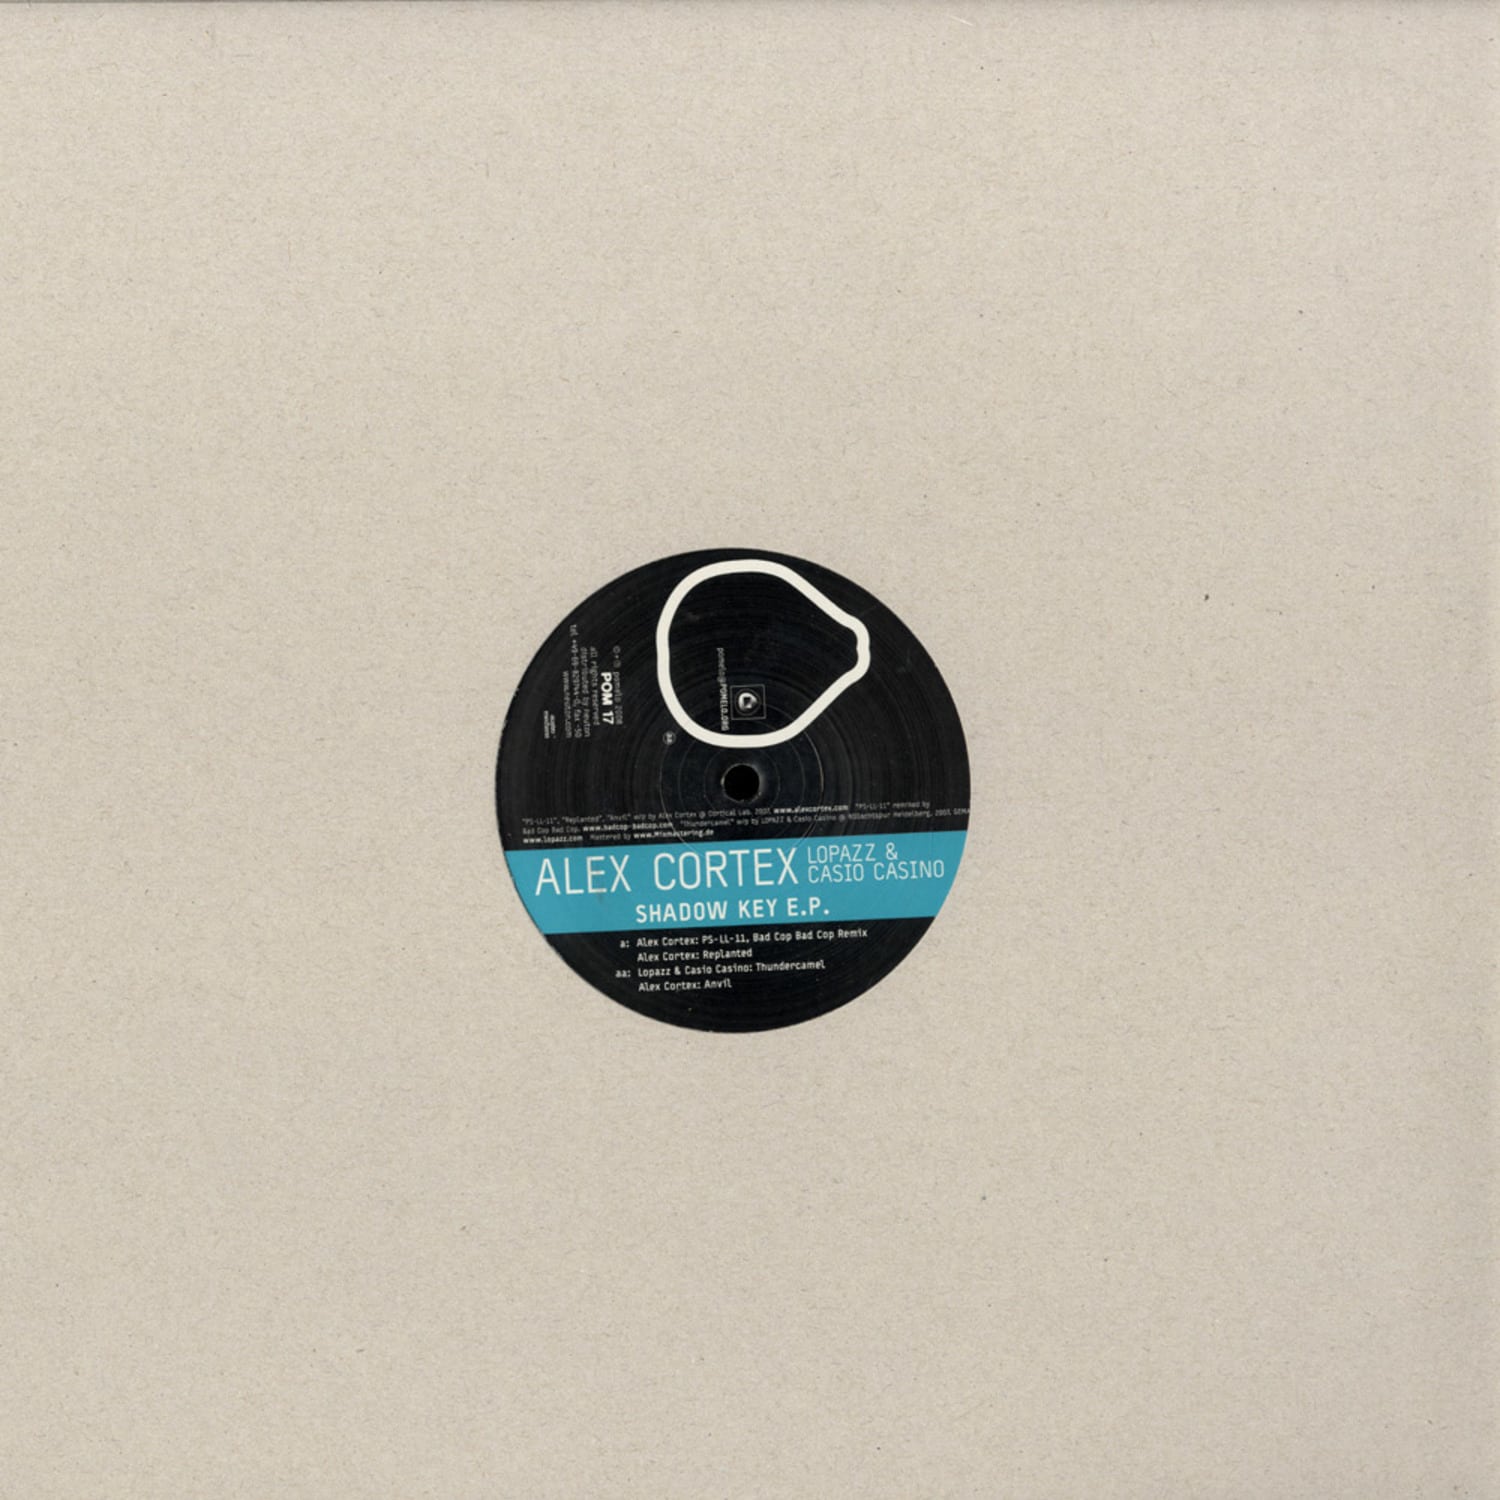 Alex Cortex / Lopazz + Casio Casino - SHADOW KEY EP